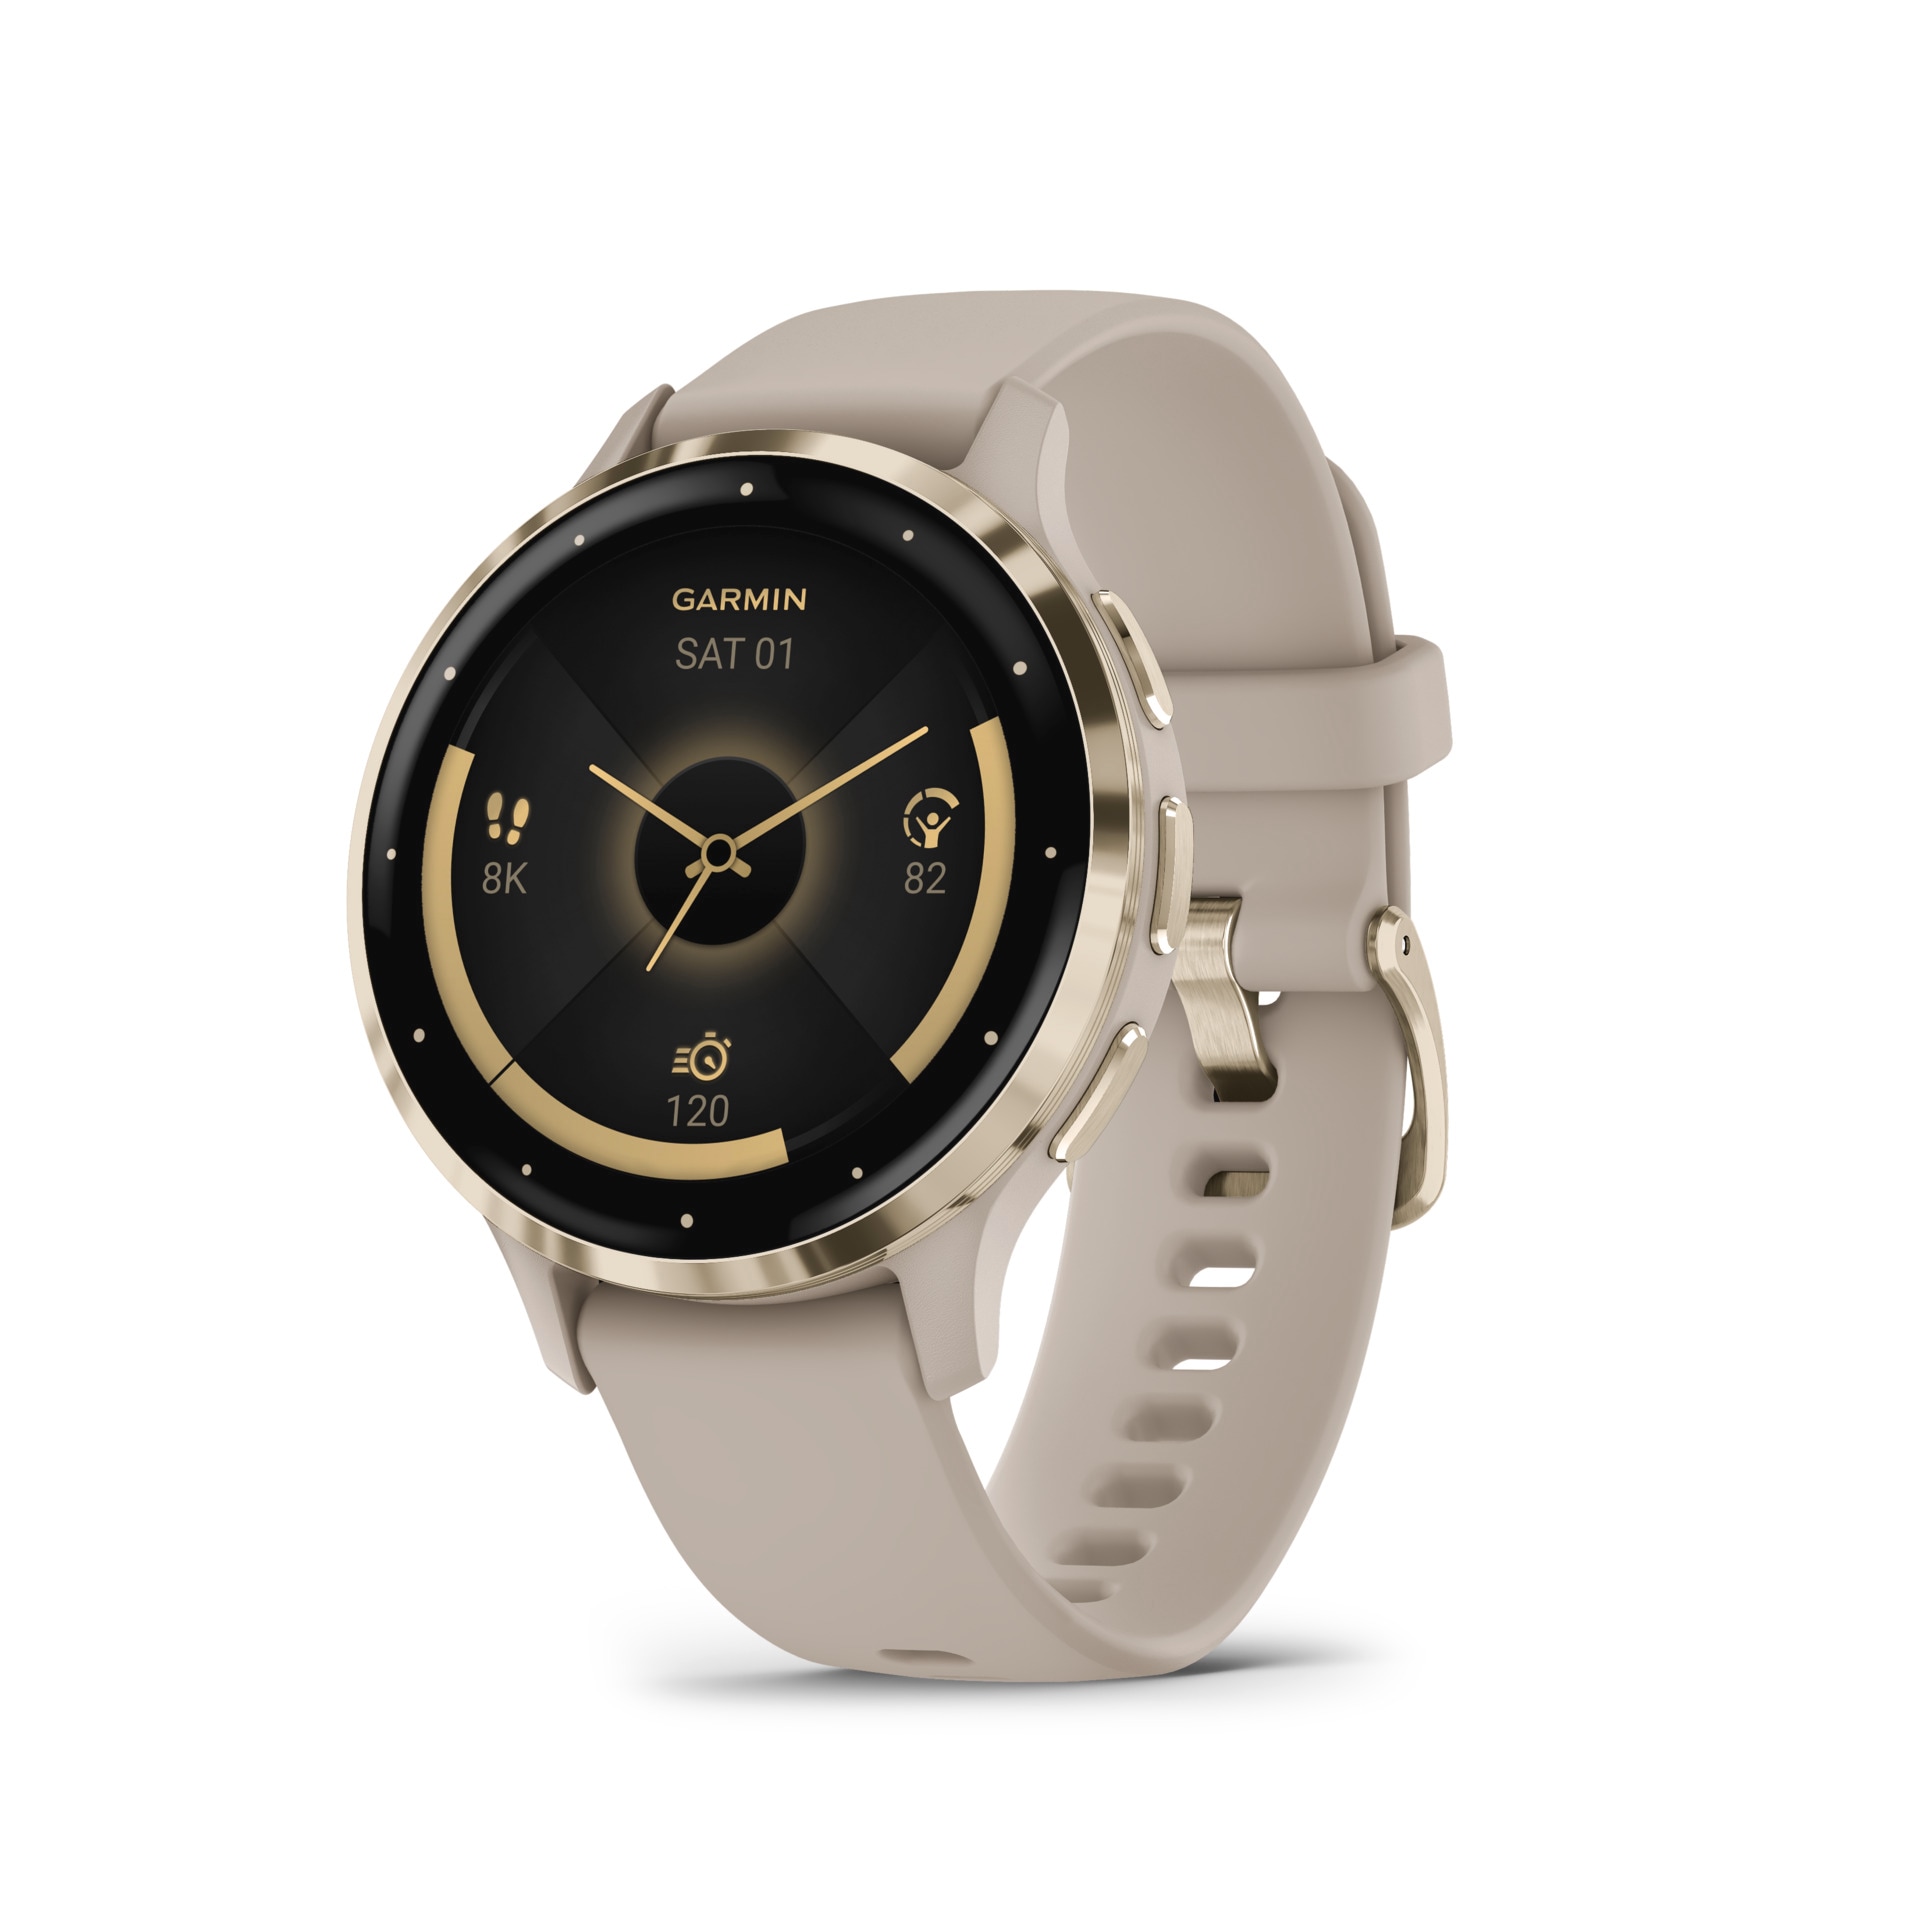 Smartwatch »VENU 3S«